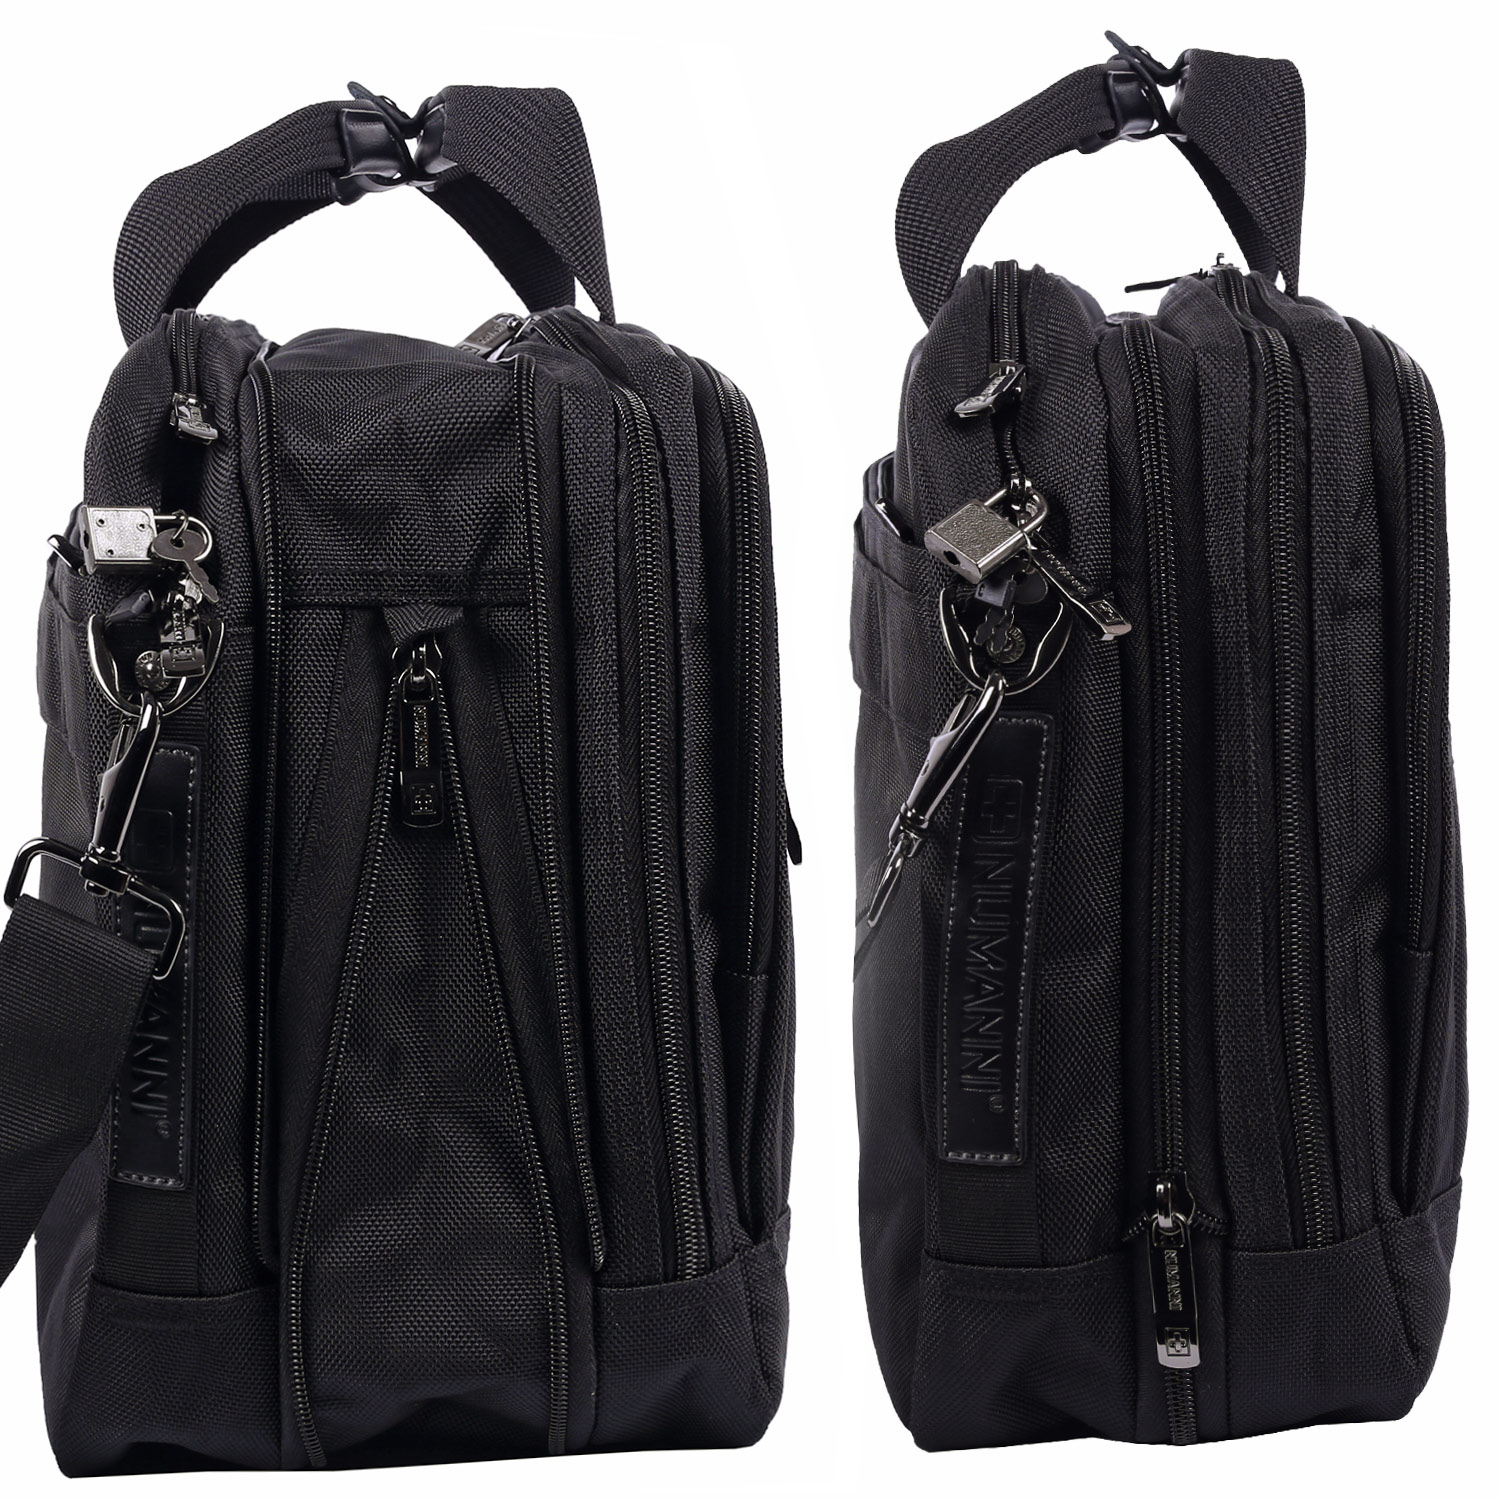 -портфель с отделением для ноутбука Numanni PW883, цвет: черный .